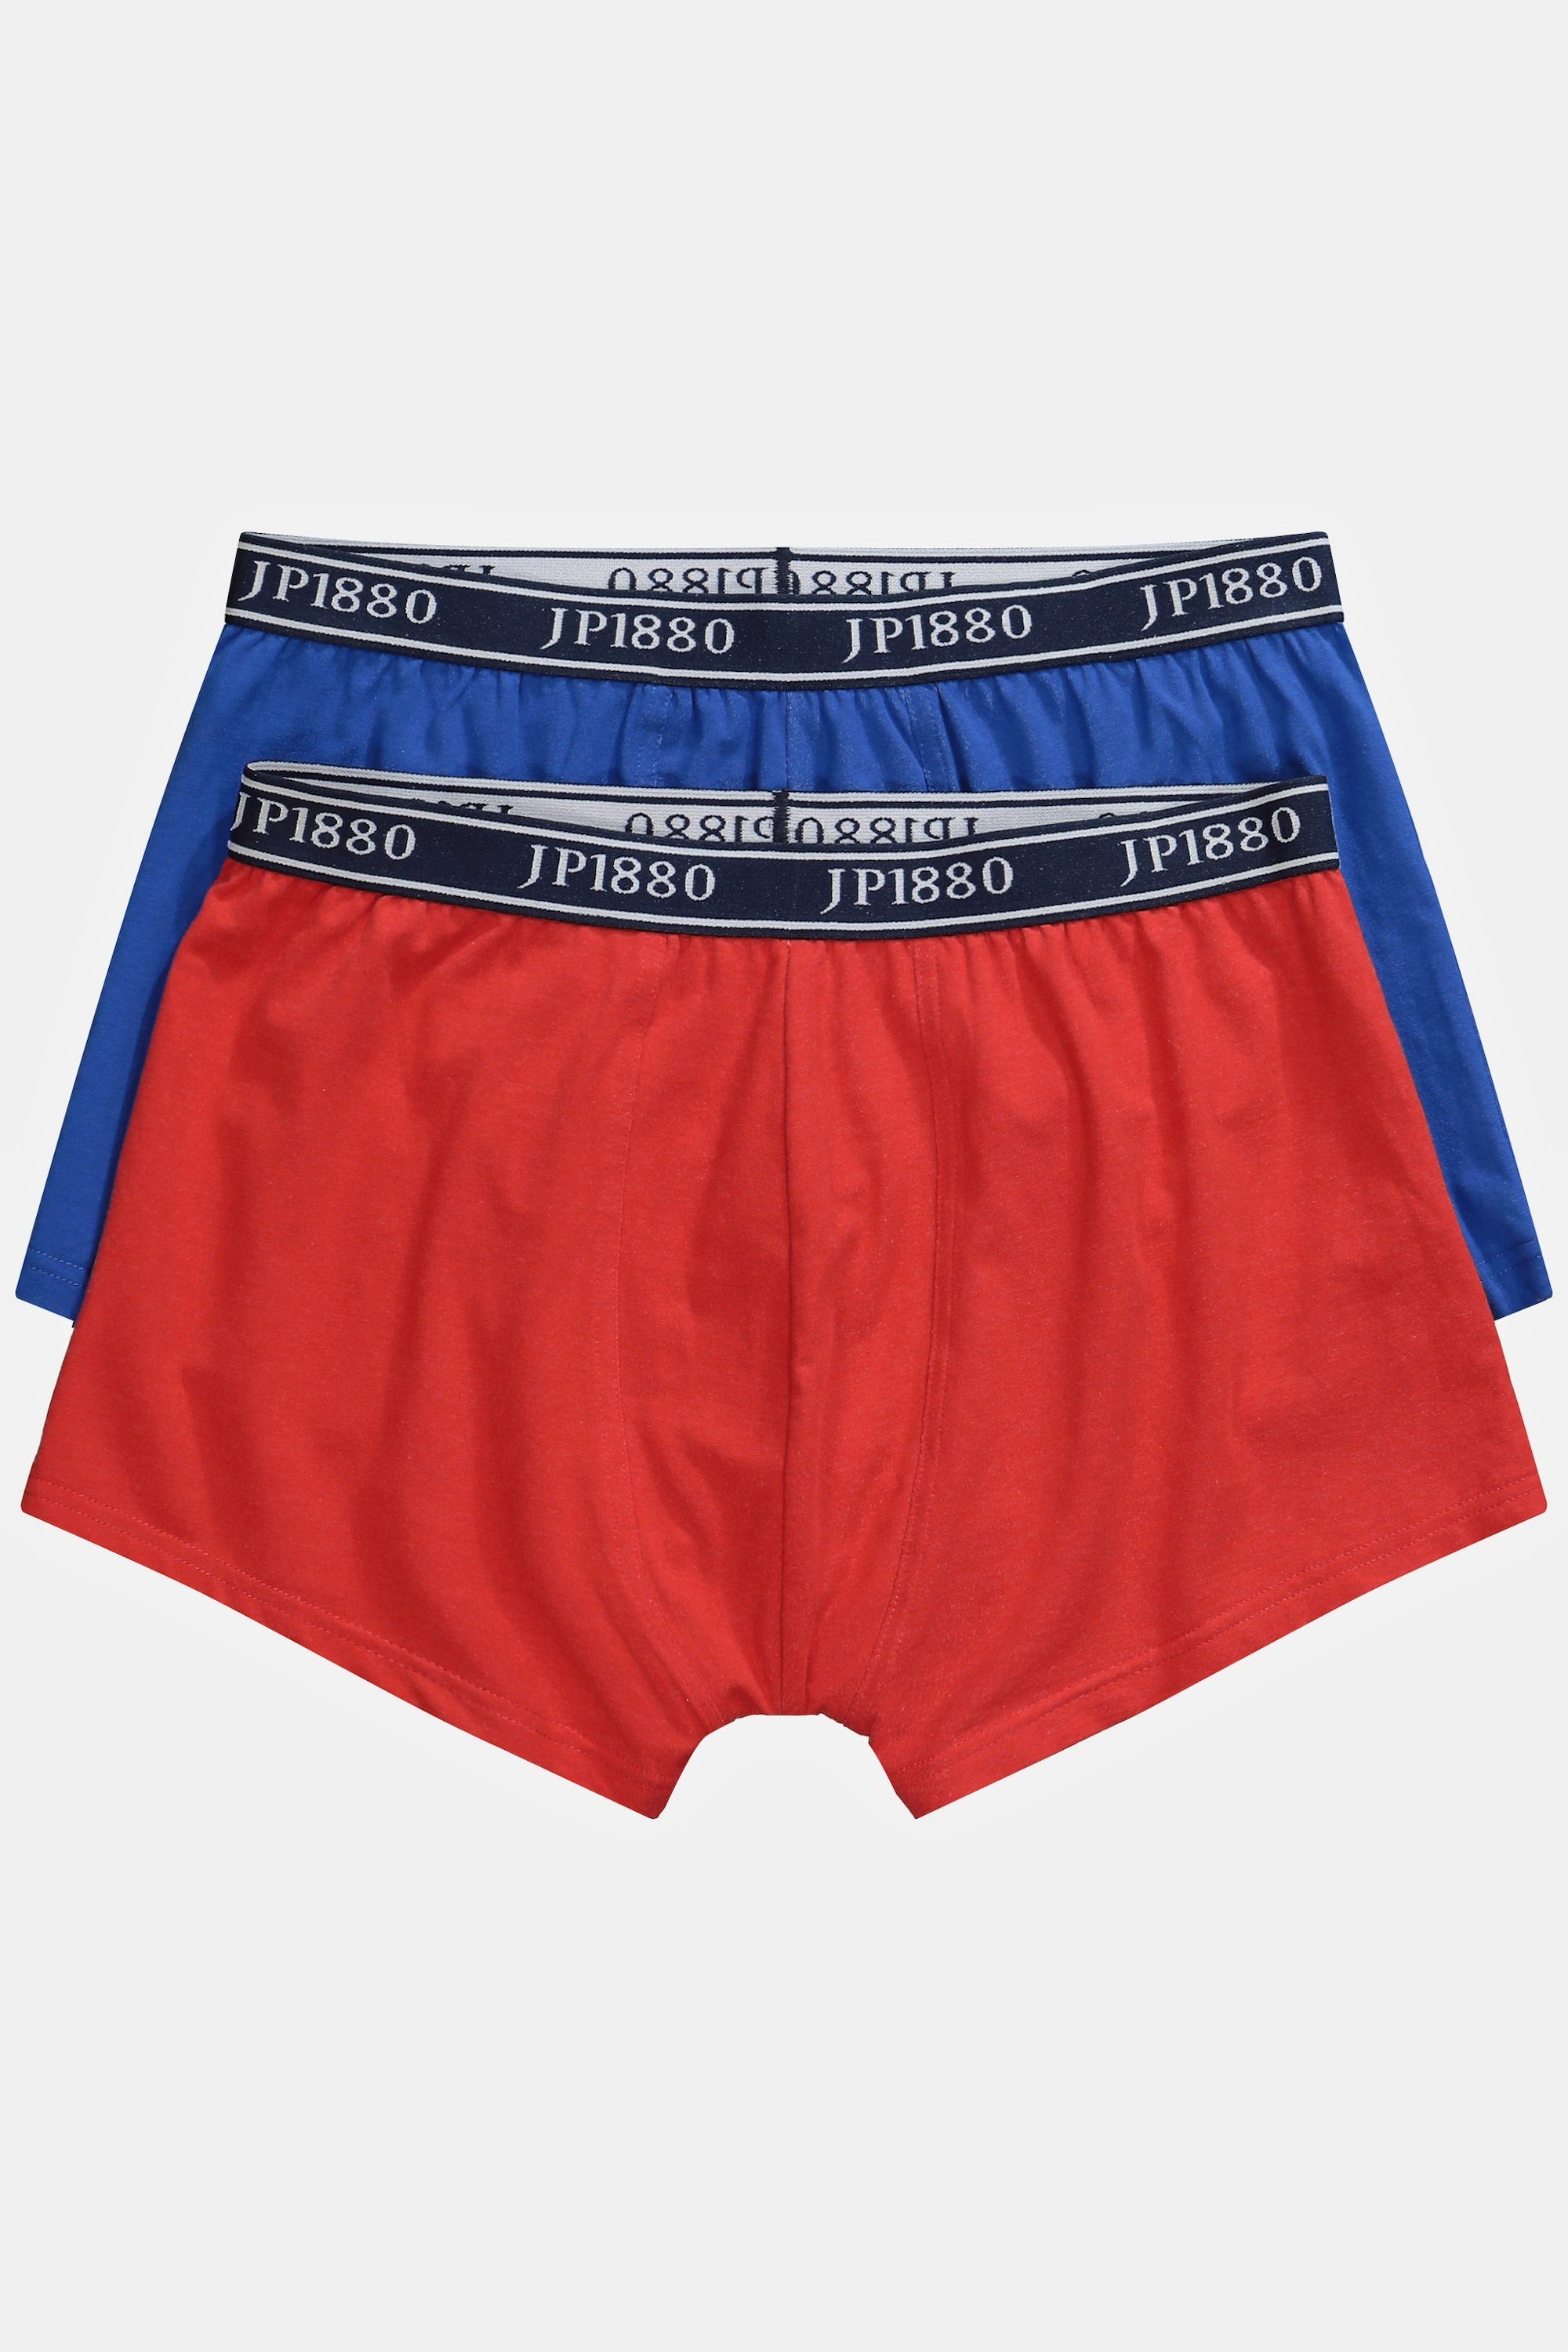 paprikarot Boxershorts Unterhose FLEXNAMIC® 2er-Pack JP1880 Hip-Pants